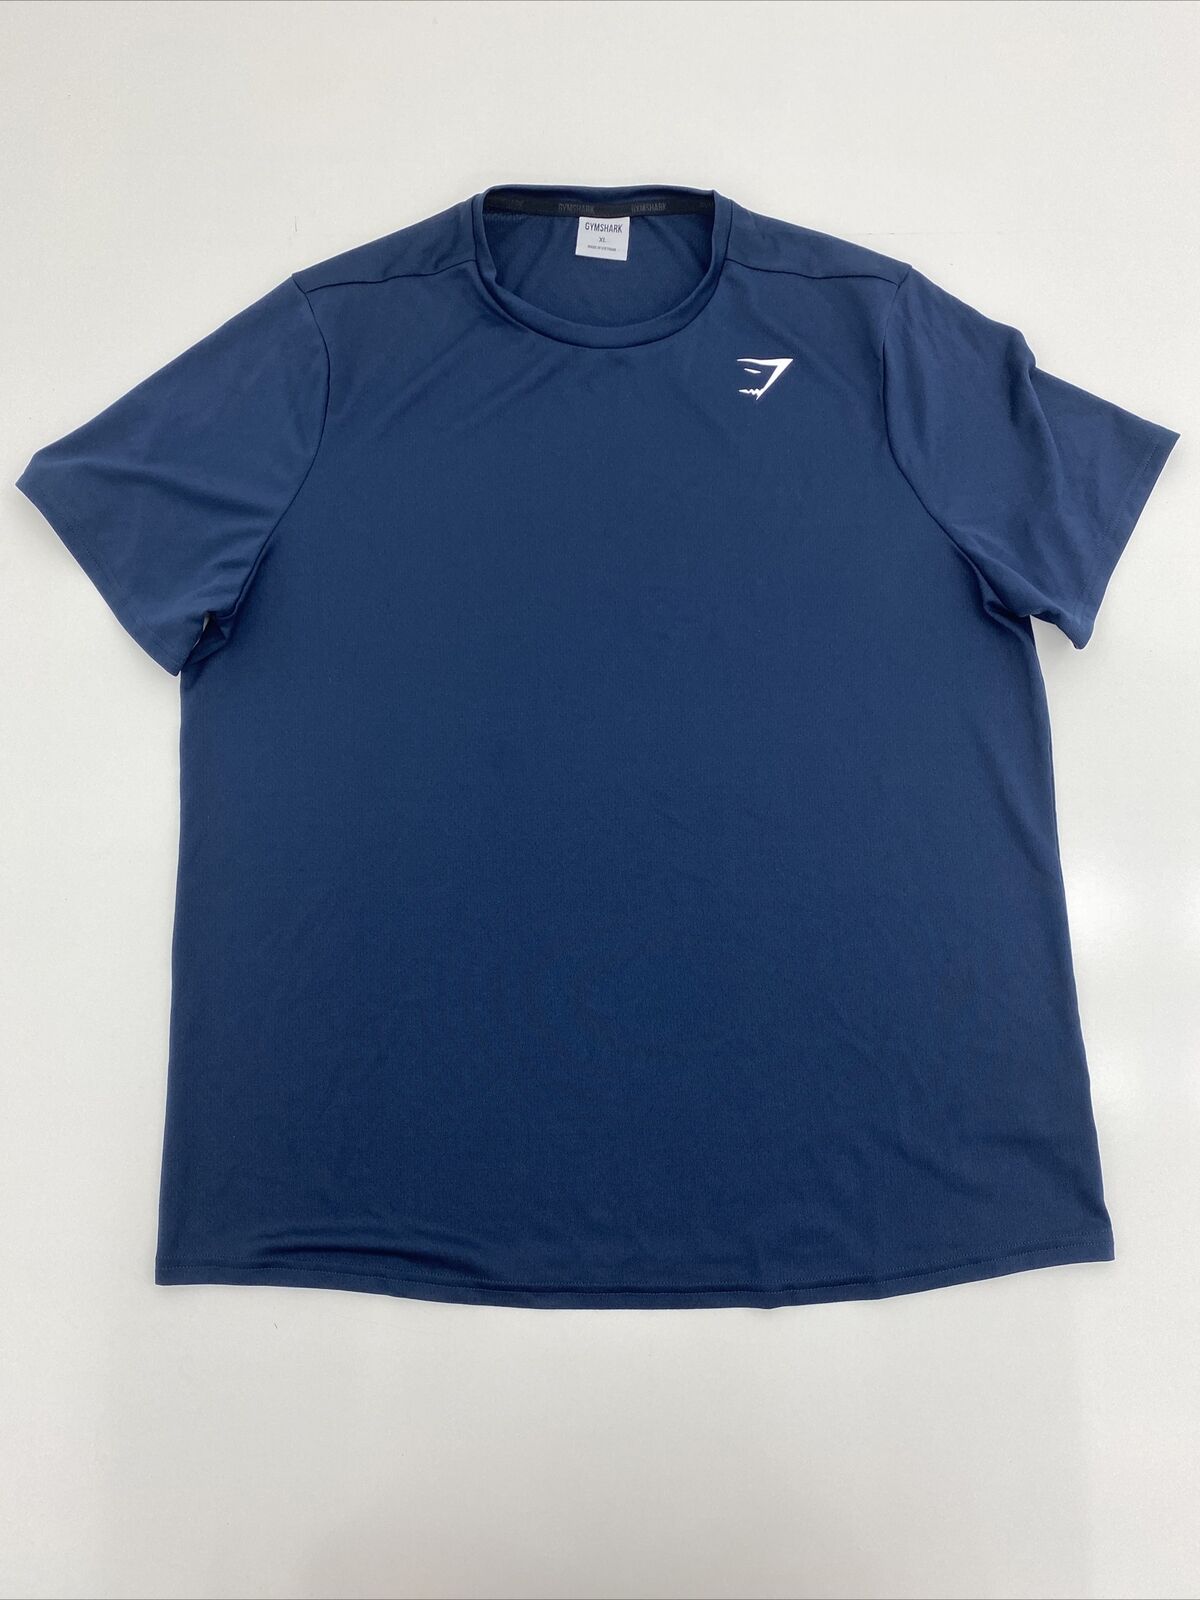 Gymshark Arrival Regular Fit T-Shirt Navy Blue Mens Size Extra Large N -  beyond exchange